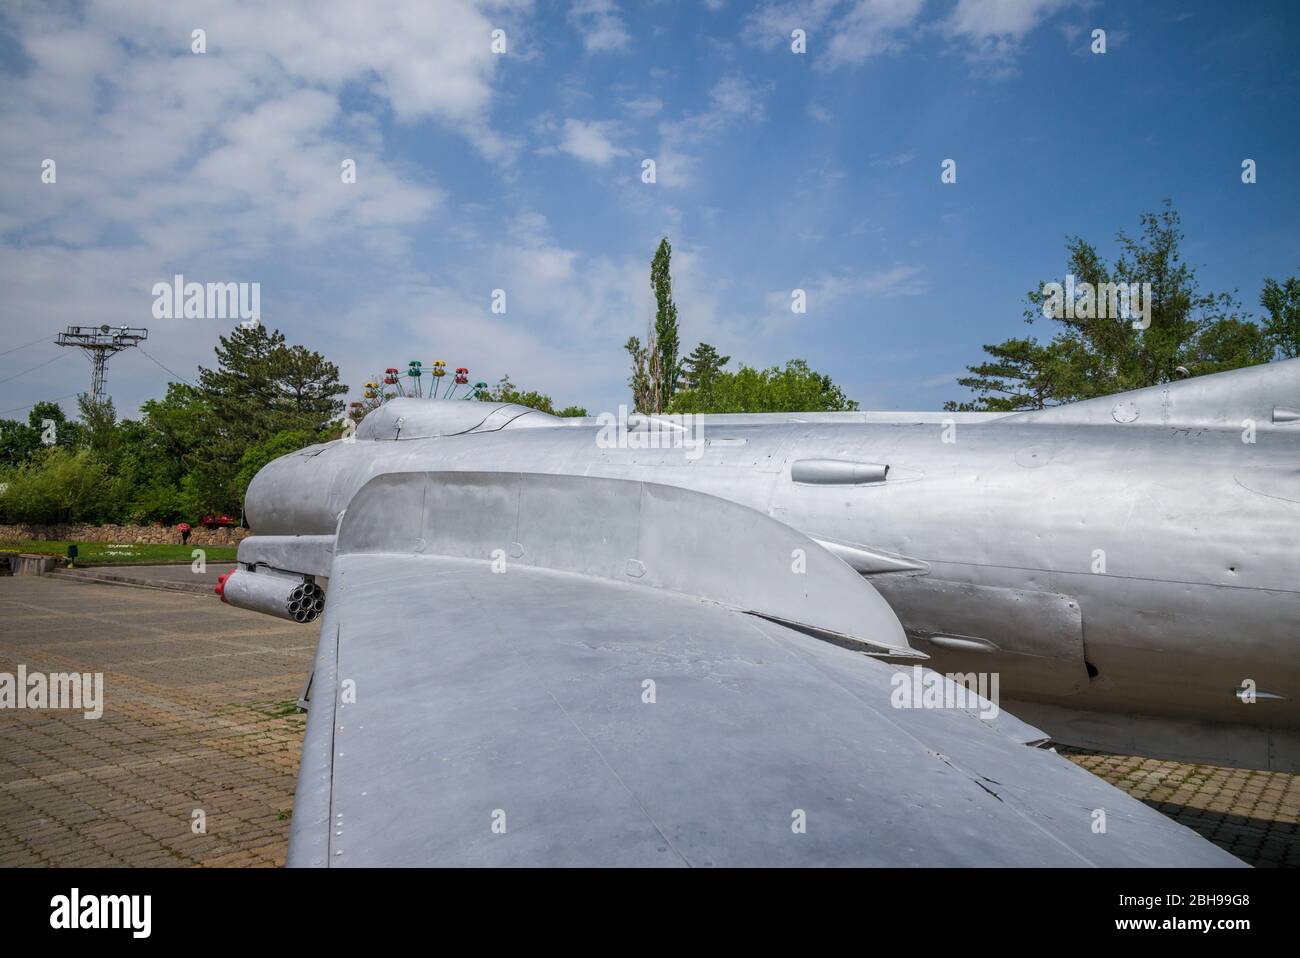 Armenia, Yerevan, dell era sovietica Madre Armenia Park e dell era sovietica Mig-17 jet da combattimento Foto Stock